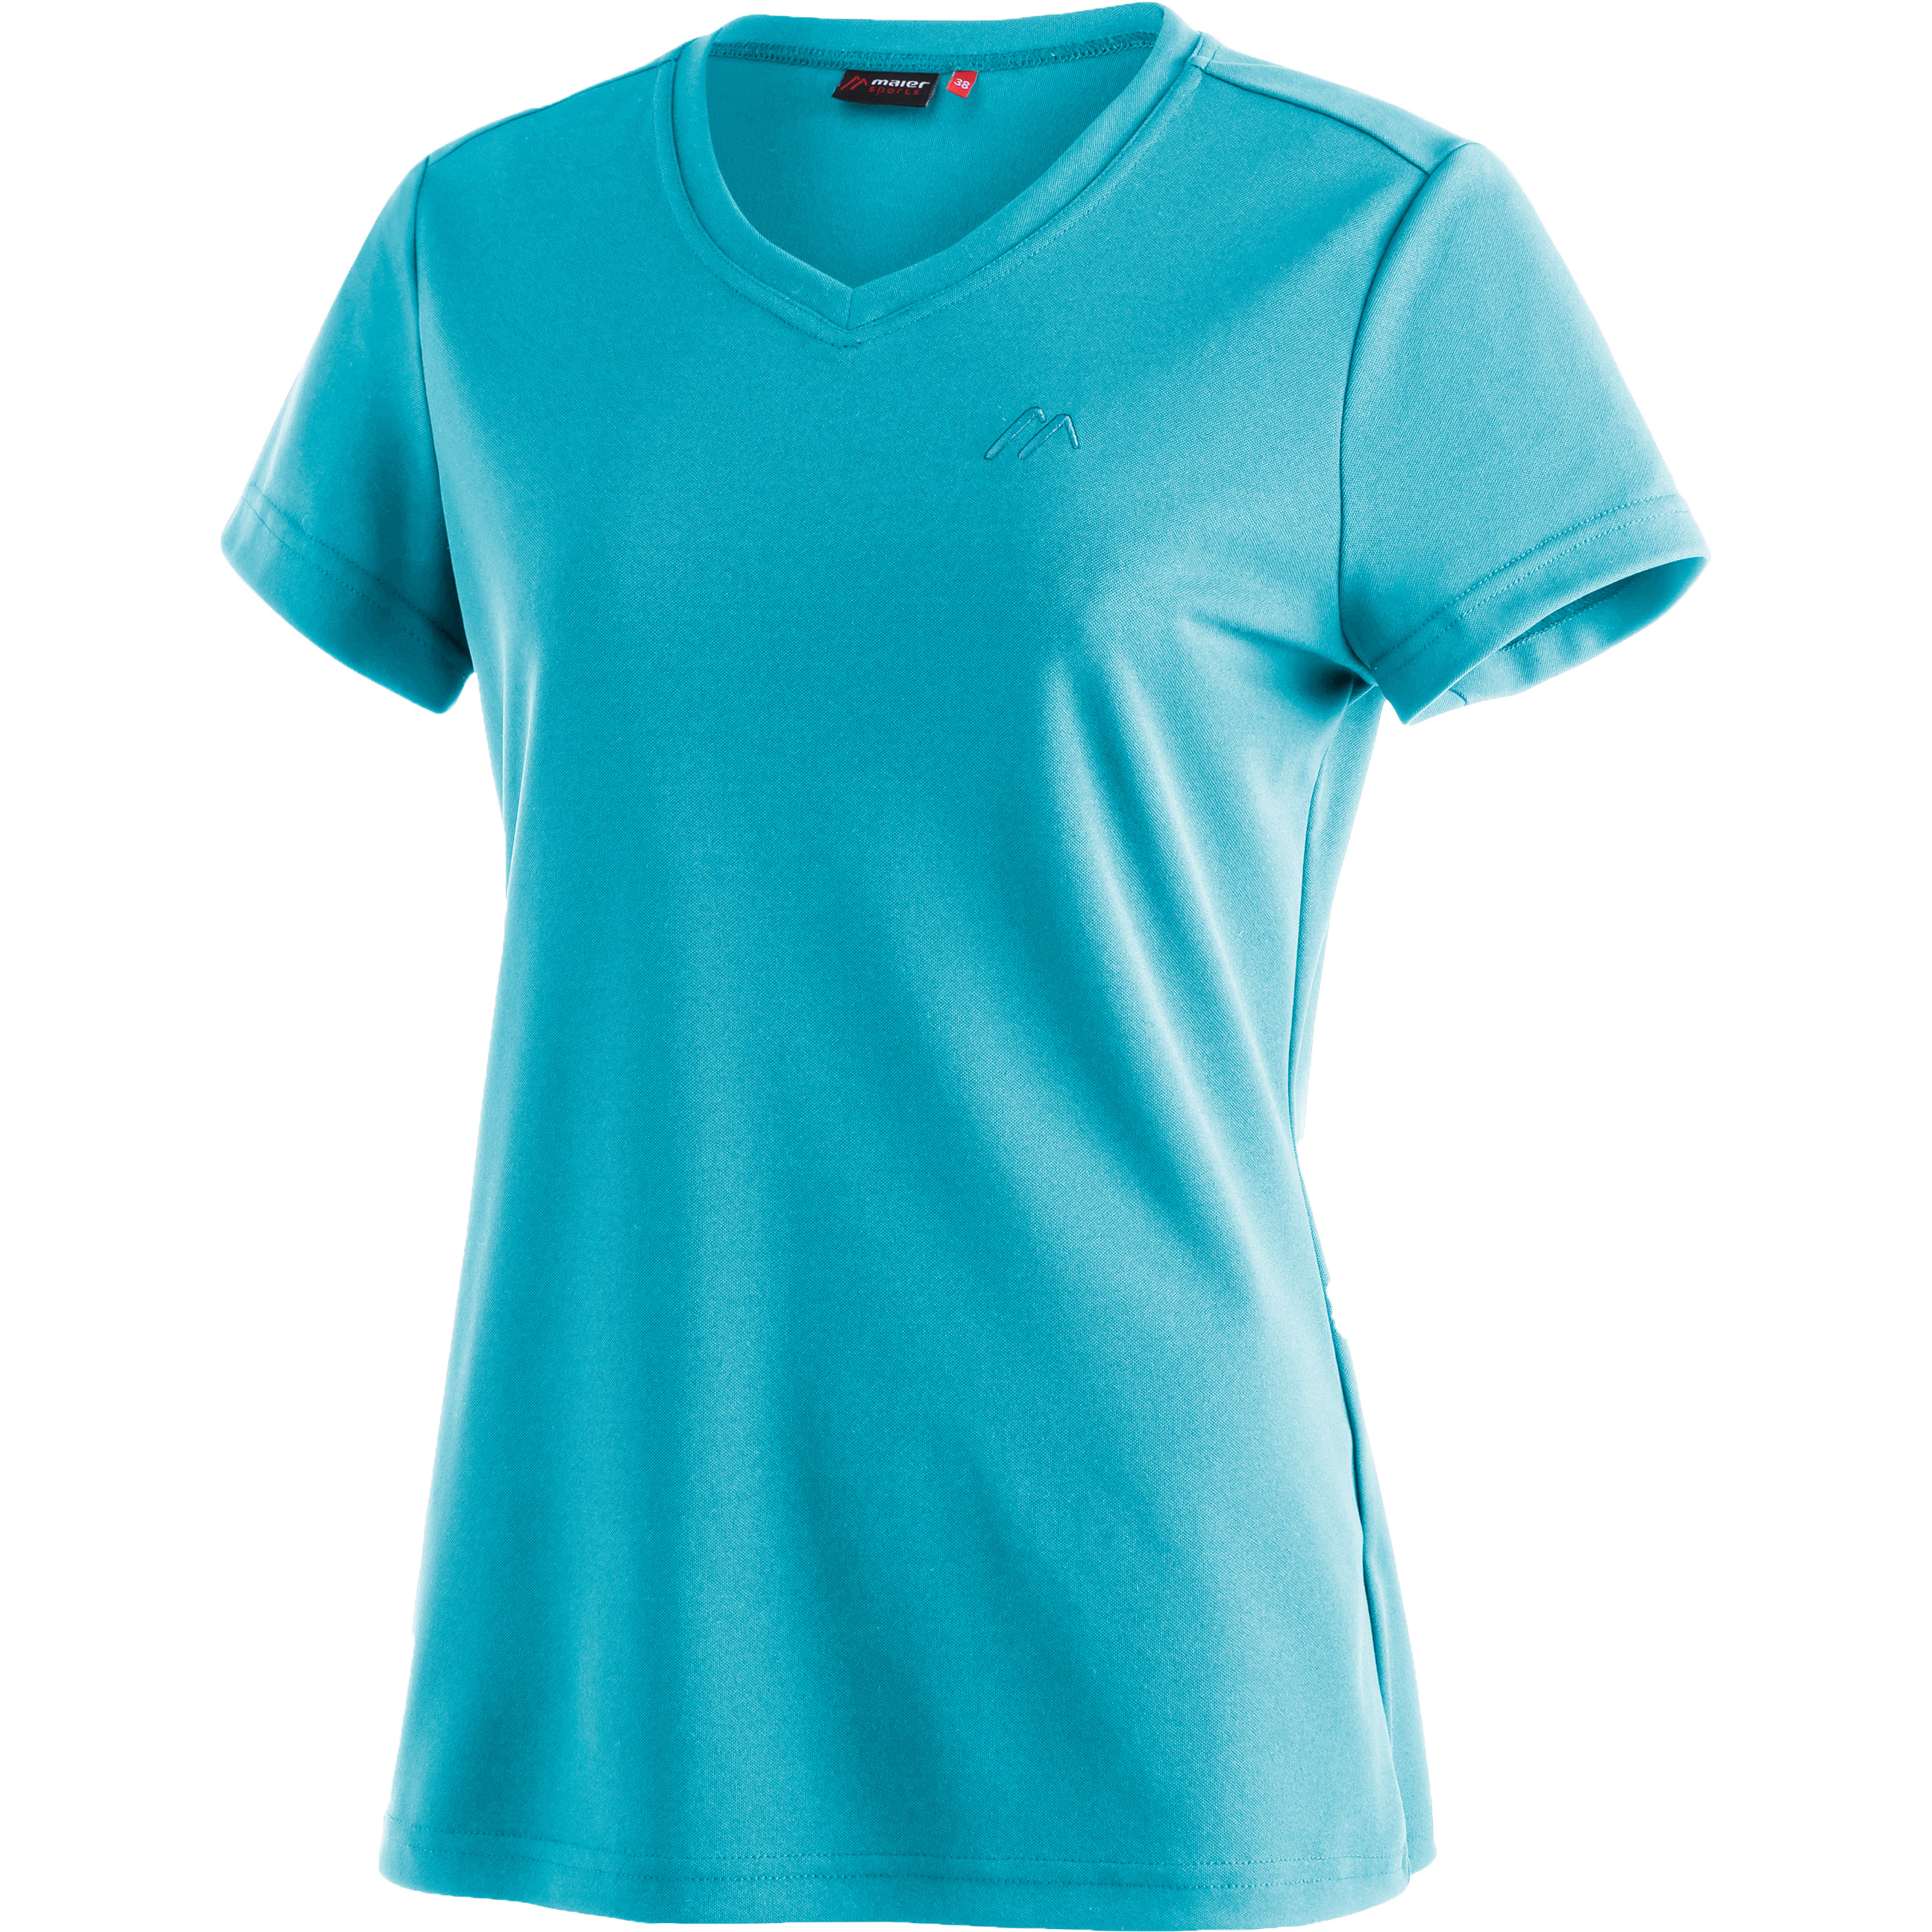 Maier Sports Trudy shirt dames teal pop